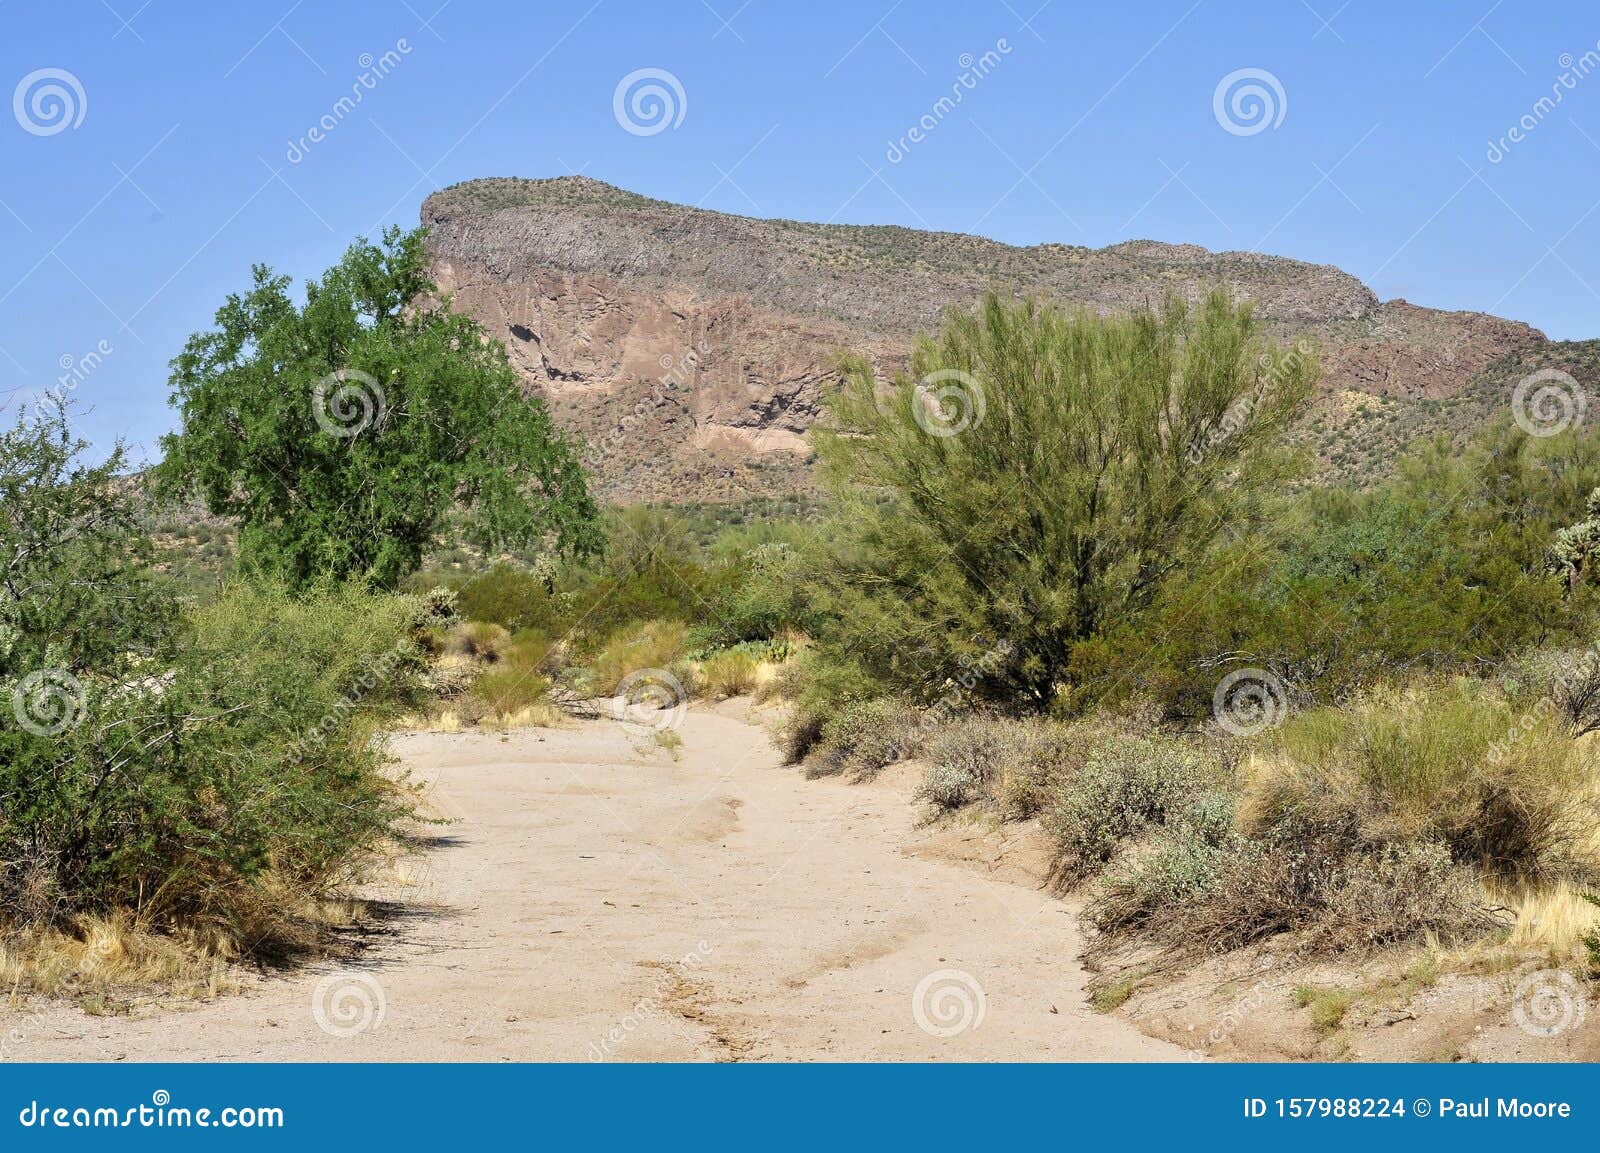 narrow arizona desert arroyo